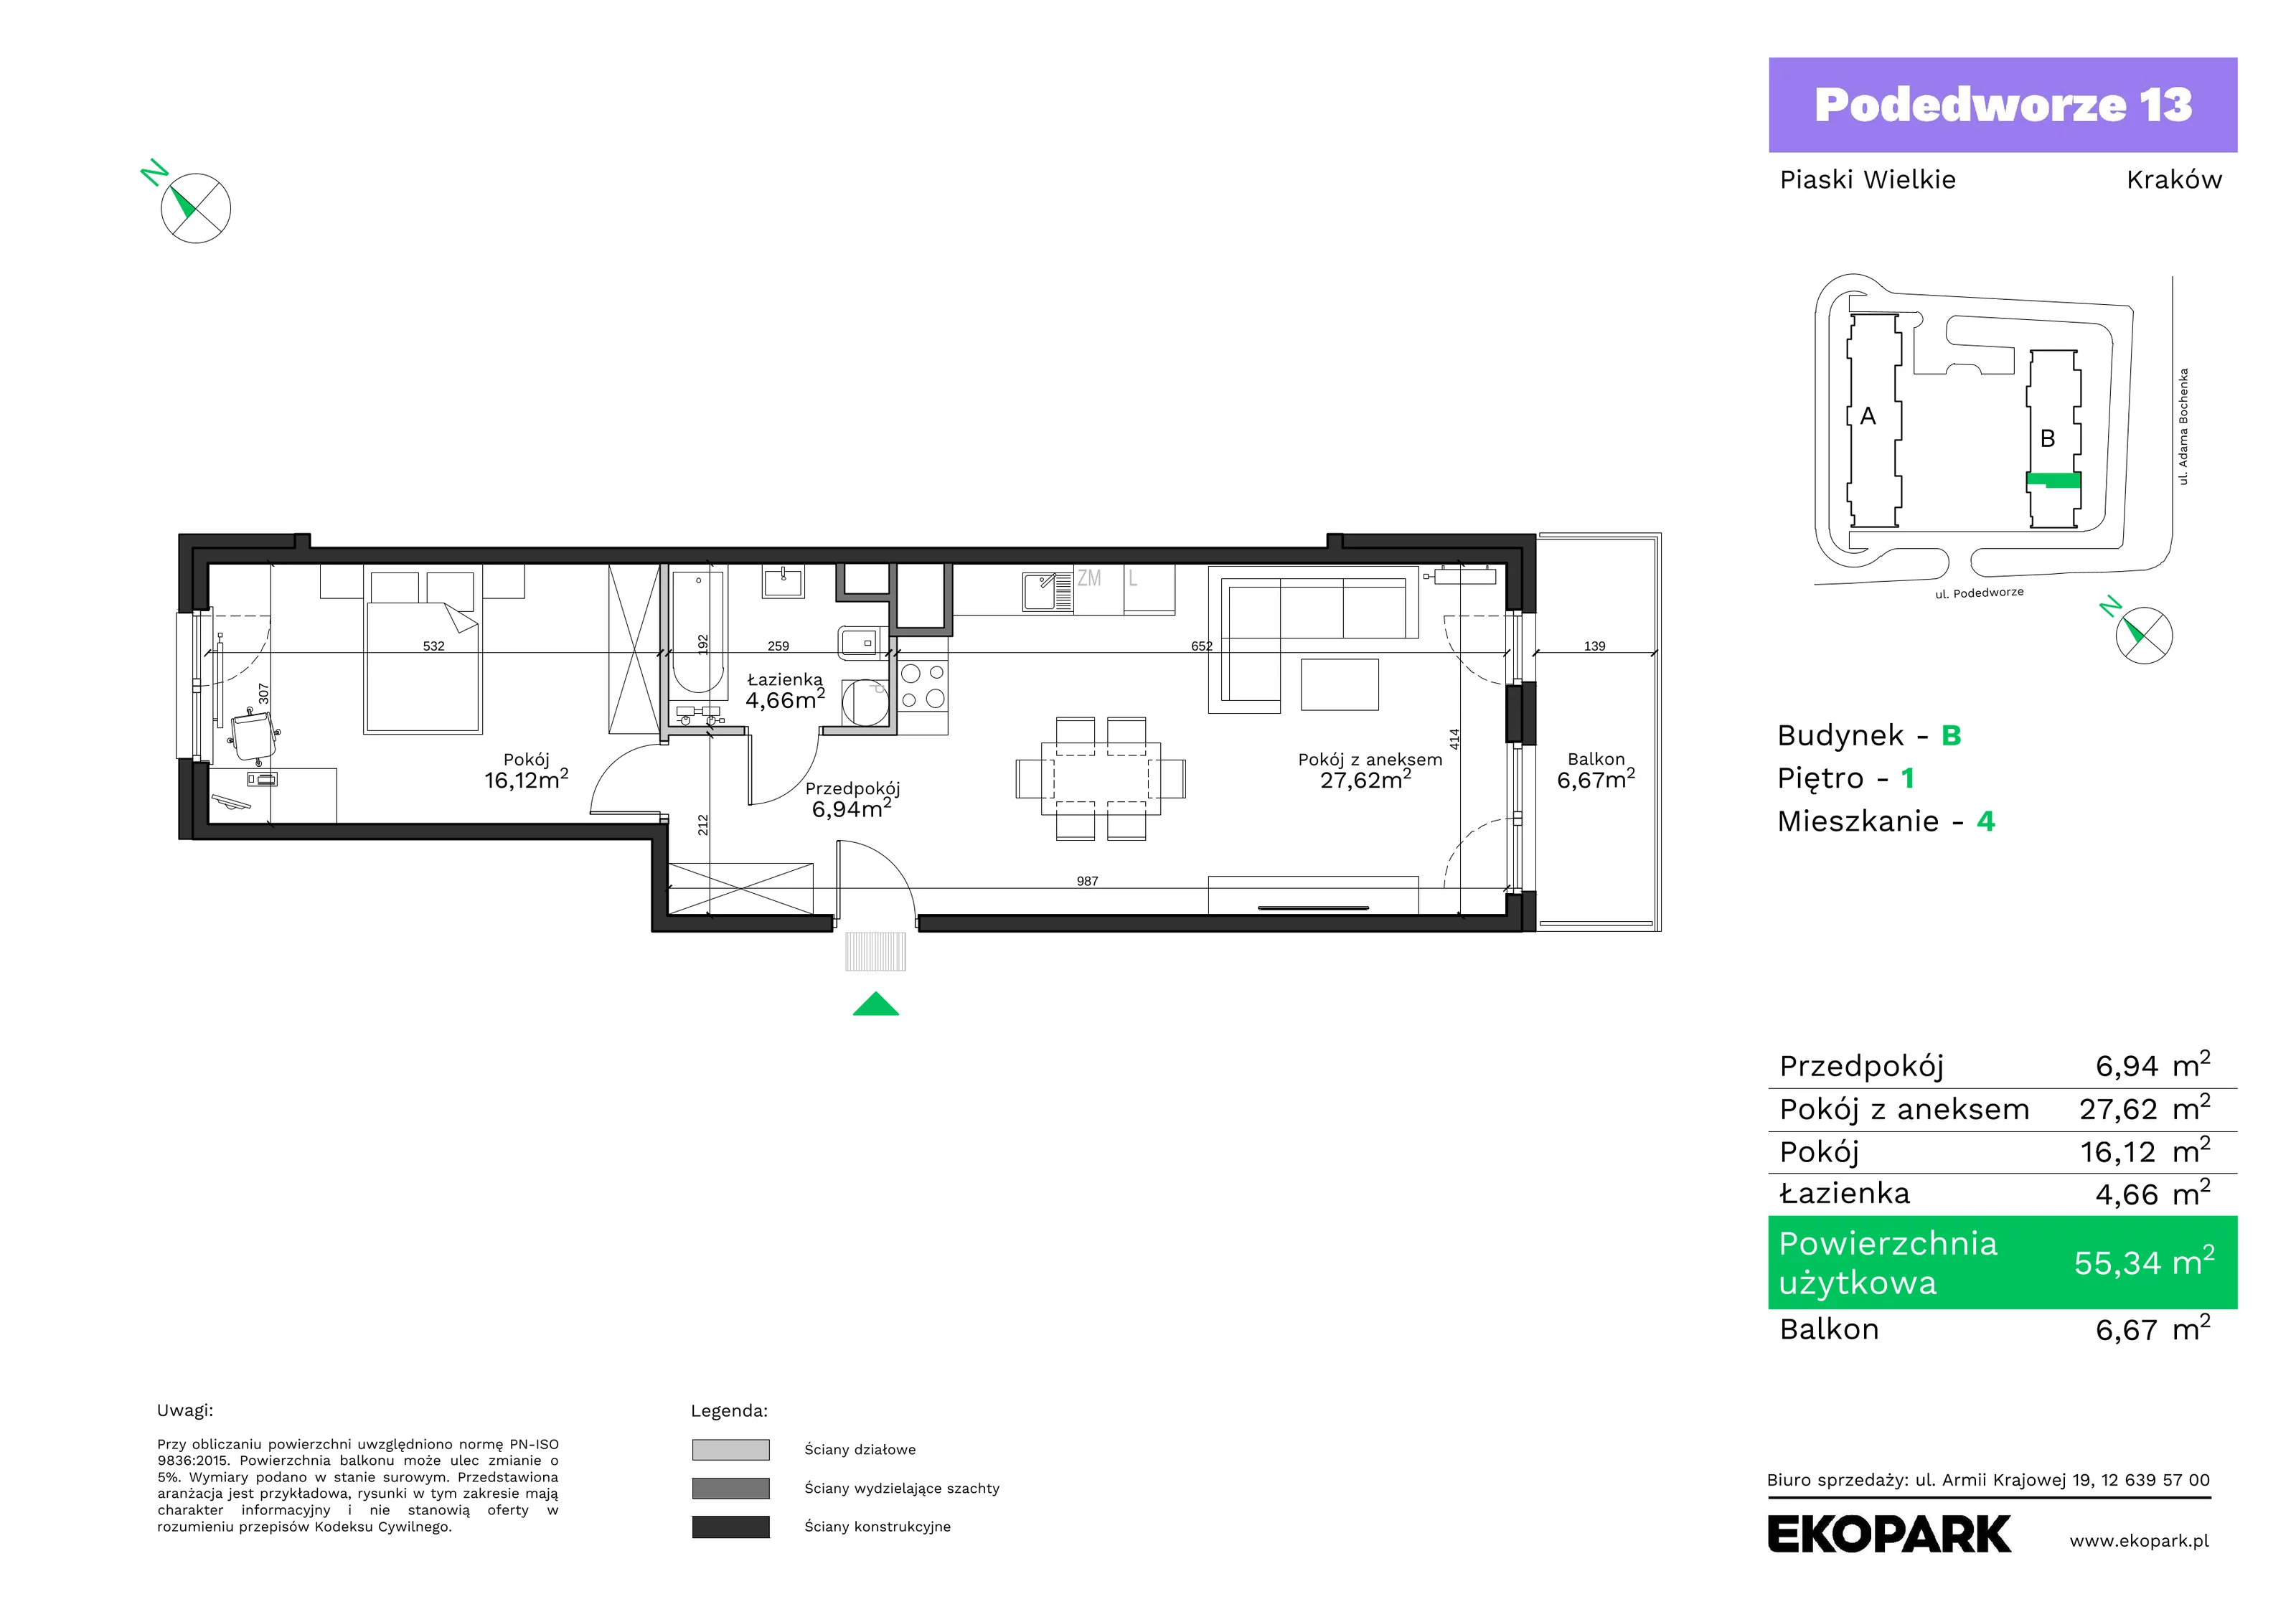 Mieszkanie 55,34 m², piętro 1, oferta nr B4, Podedworze 13, Kraków, Podgórze Duchackie, Piaski Wielkie, ul. Podedworze 13